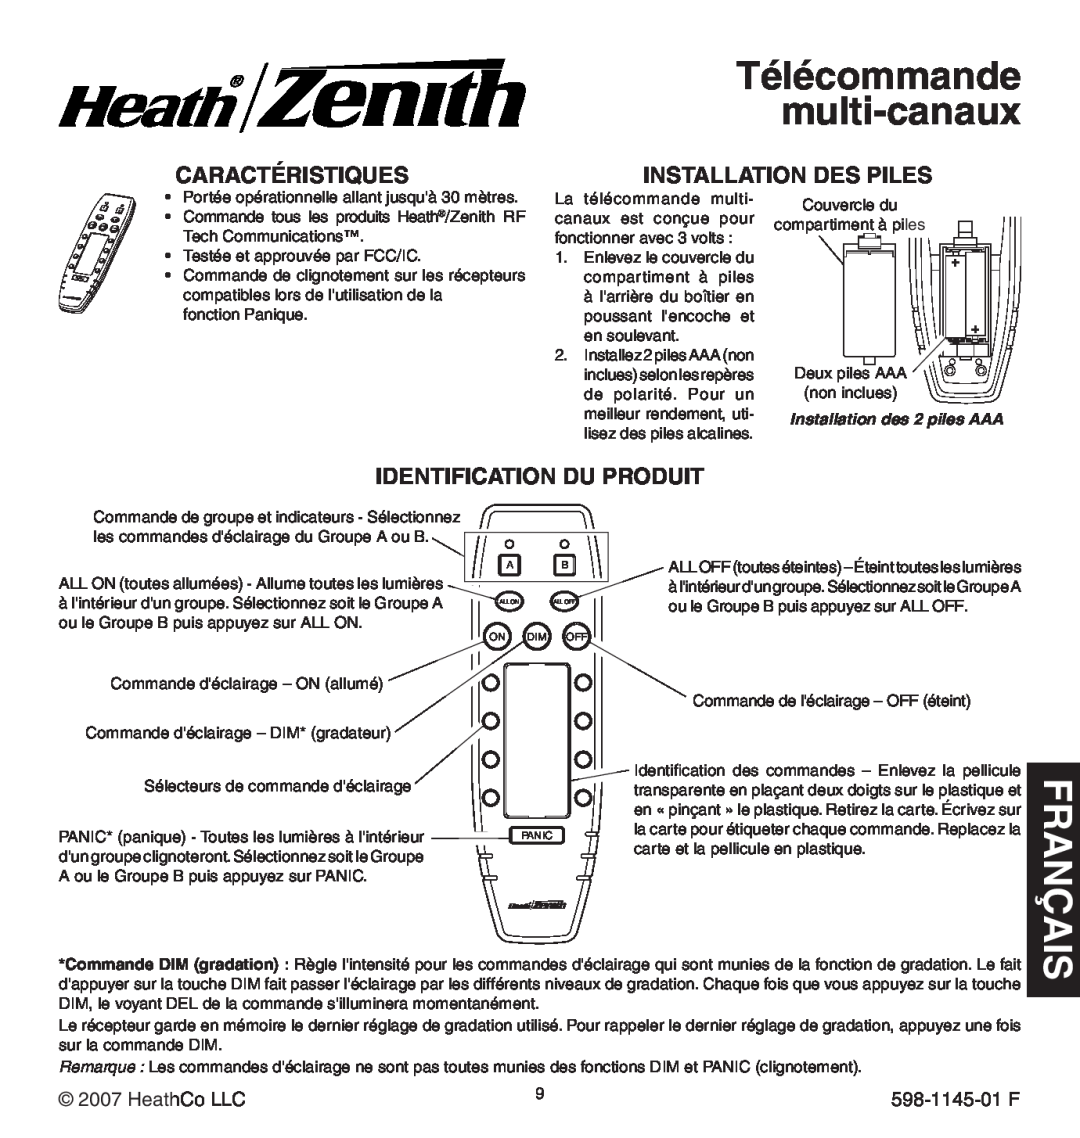 Heath Zenith Multi-Channel Remote Control Télécommande multi-canaux, is nçaa fr, Caractéristiques, Installation des piles 